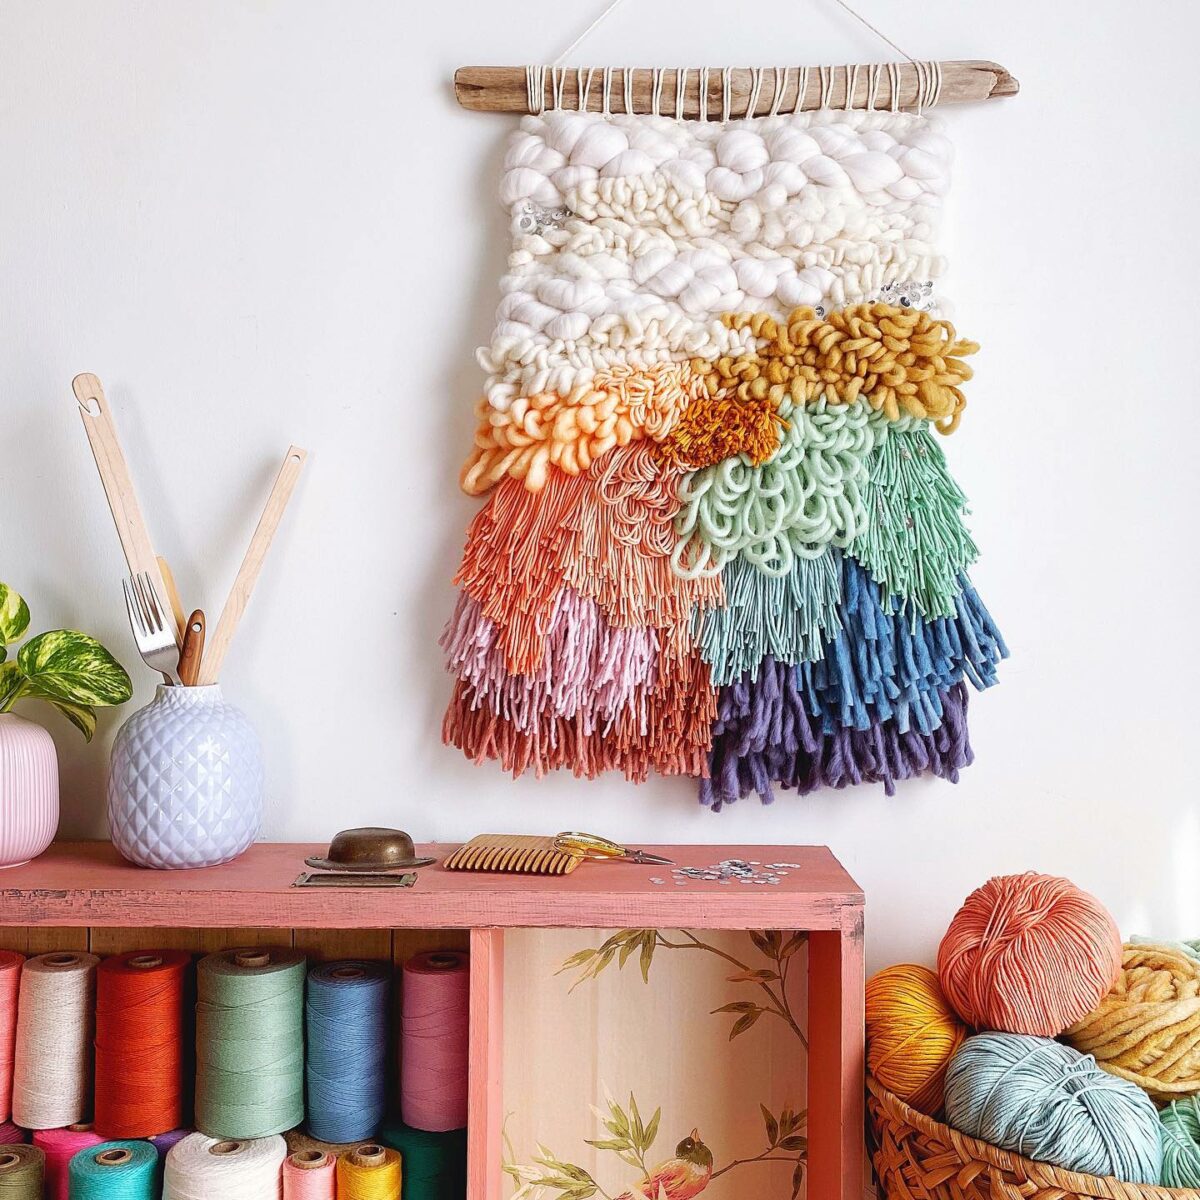 The Exuberant Textile Art In Vivid Colors Of Jen Duffin (1)